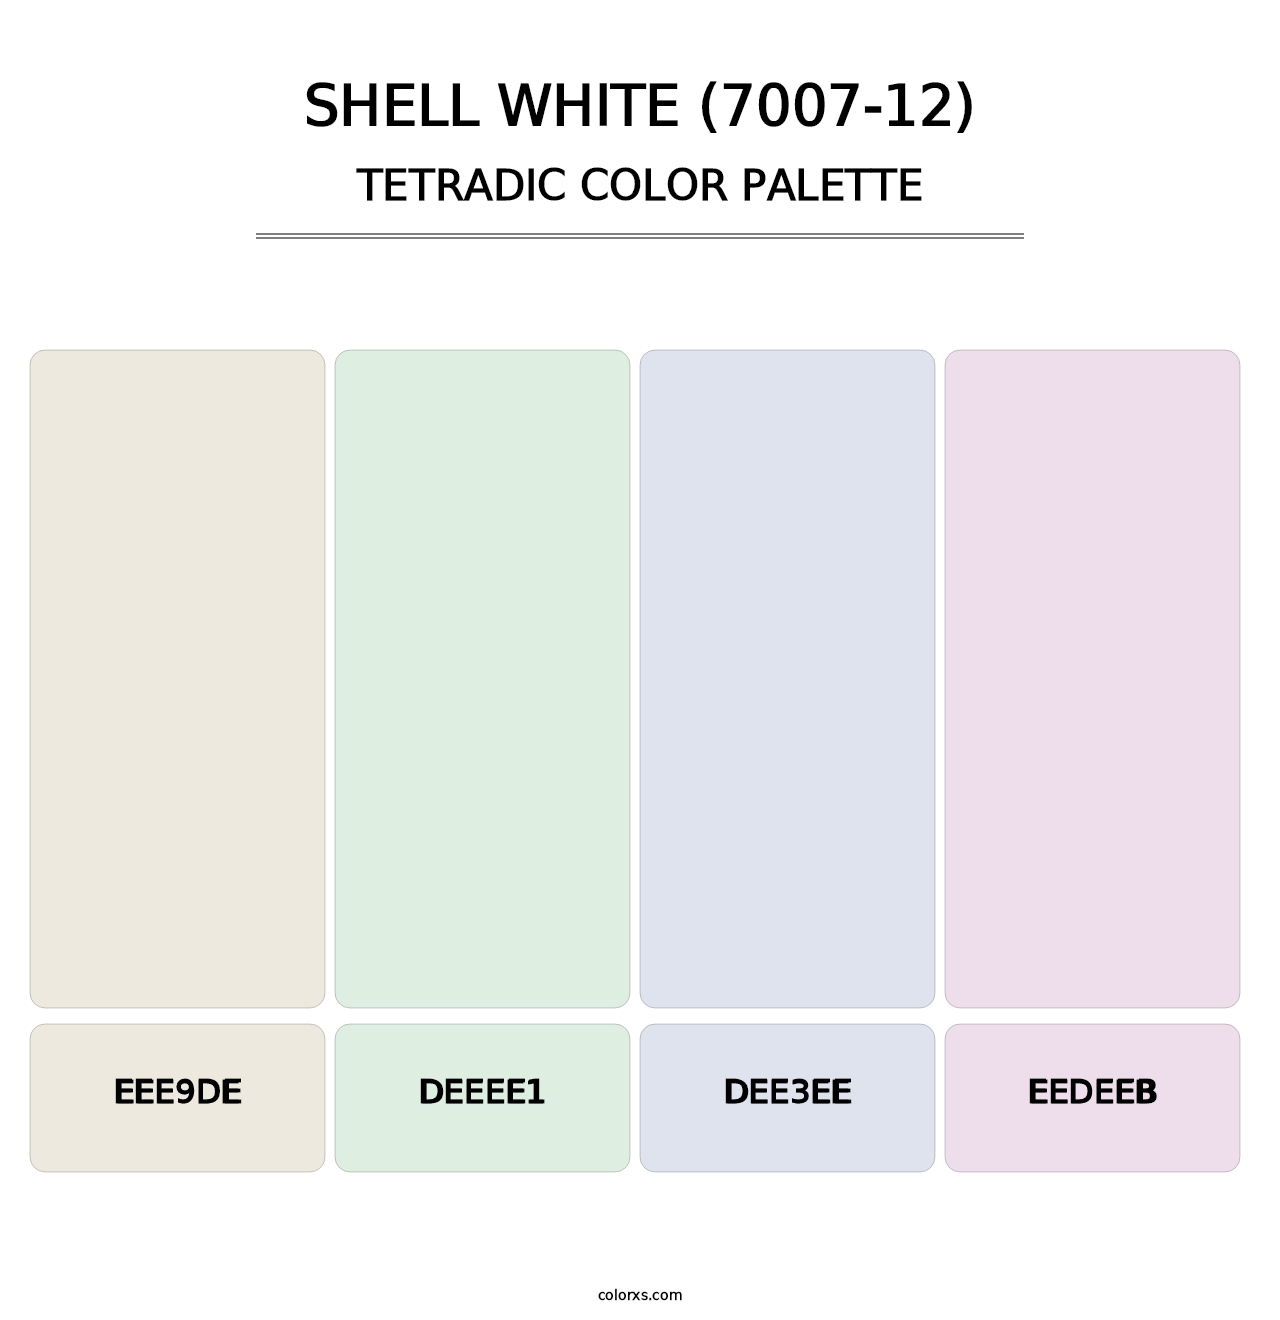 Shell White (7007-12) - Tetradic Color Palette